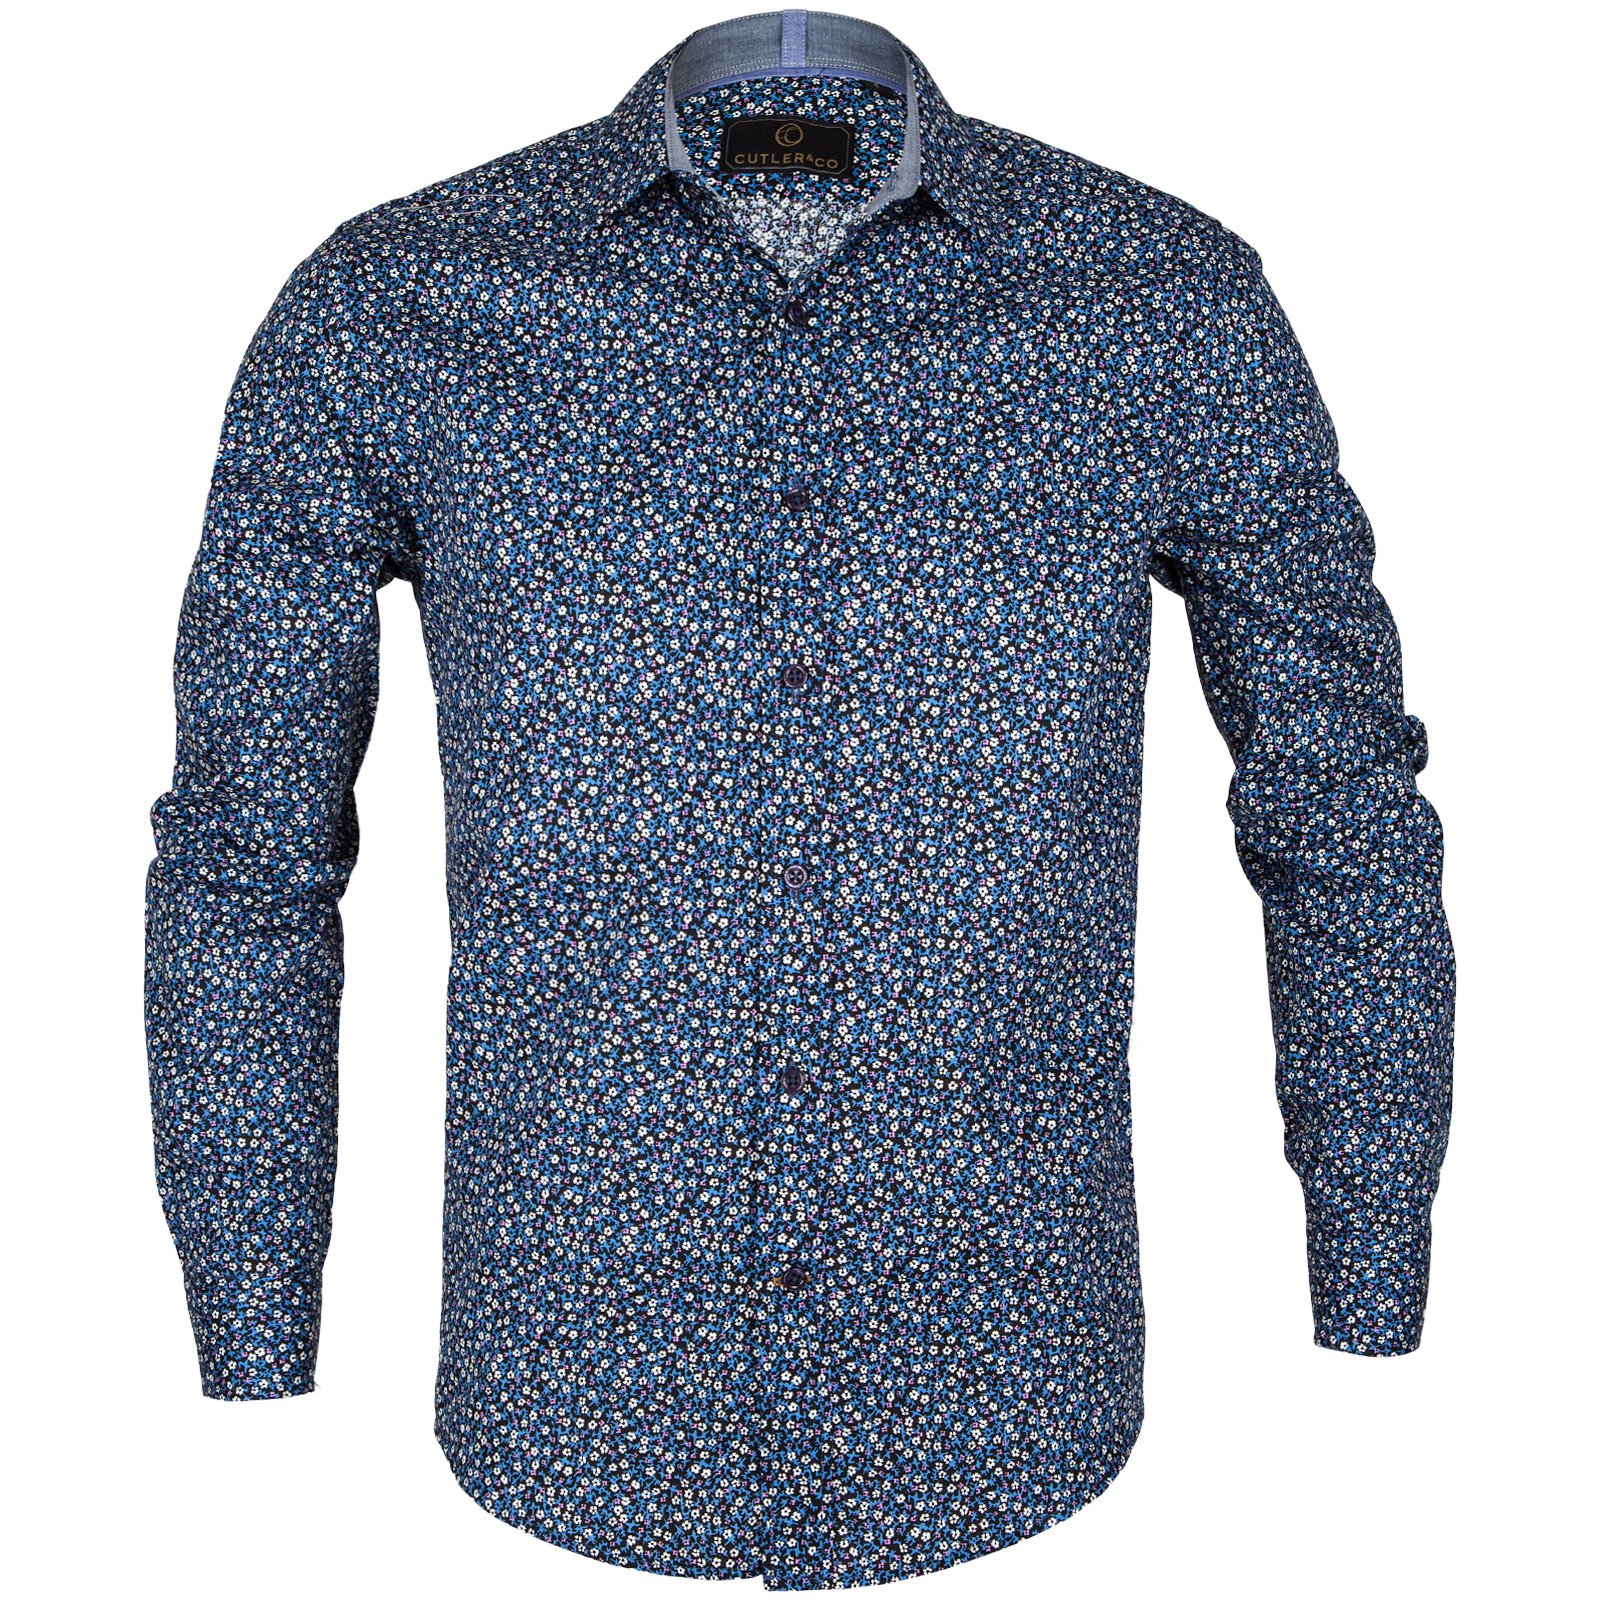 Blake Micro Floral Print Shirt - Shirts-Casual : Fifth Avenue Menswear ...